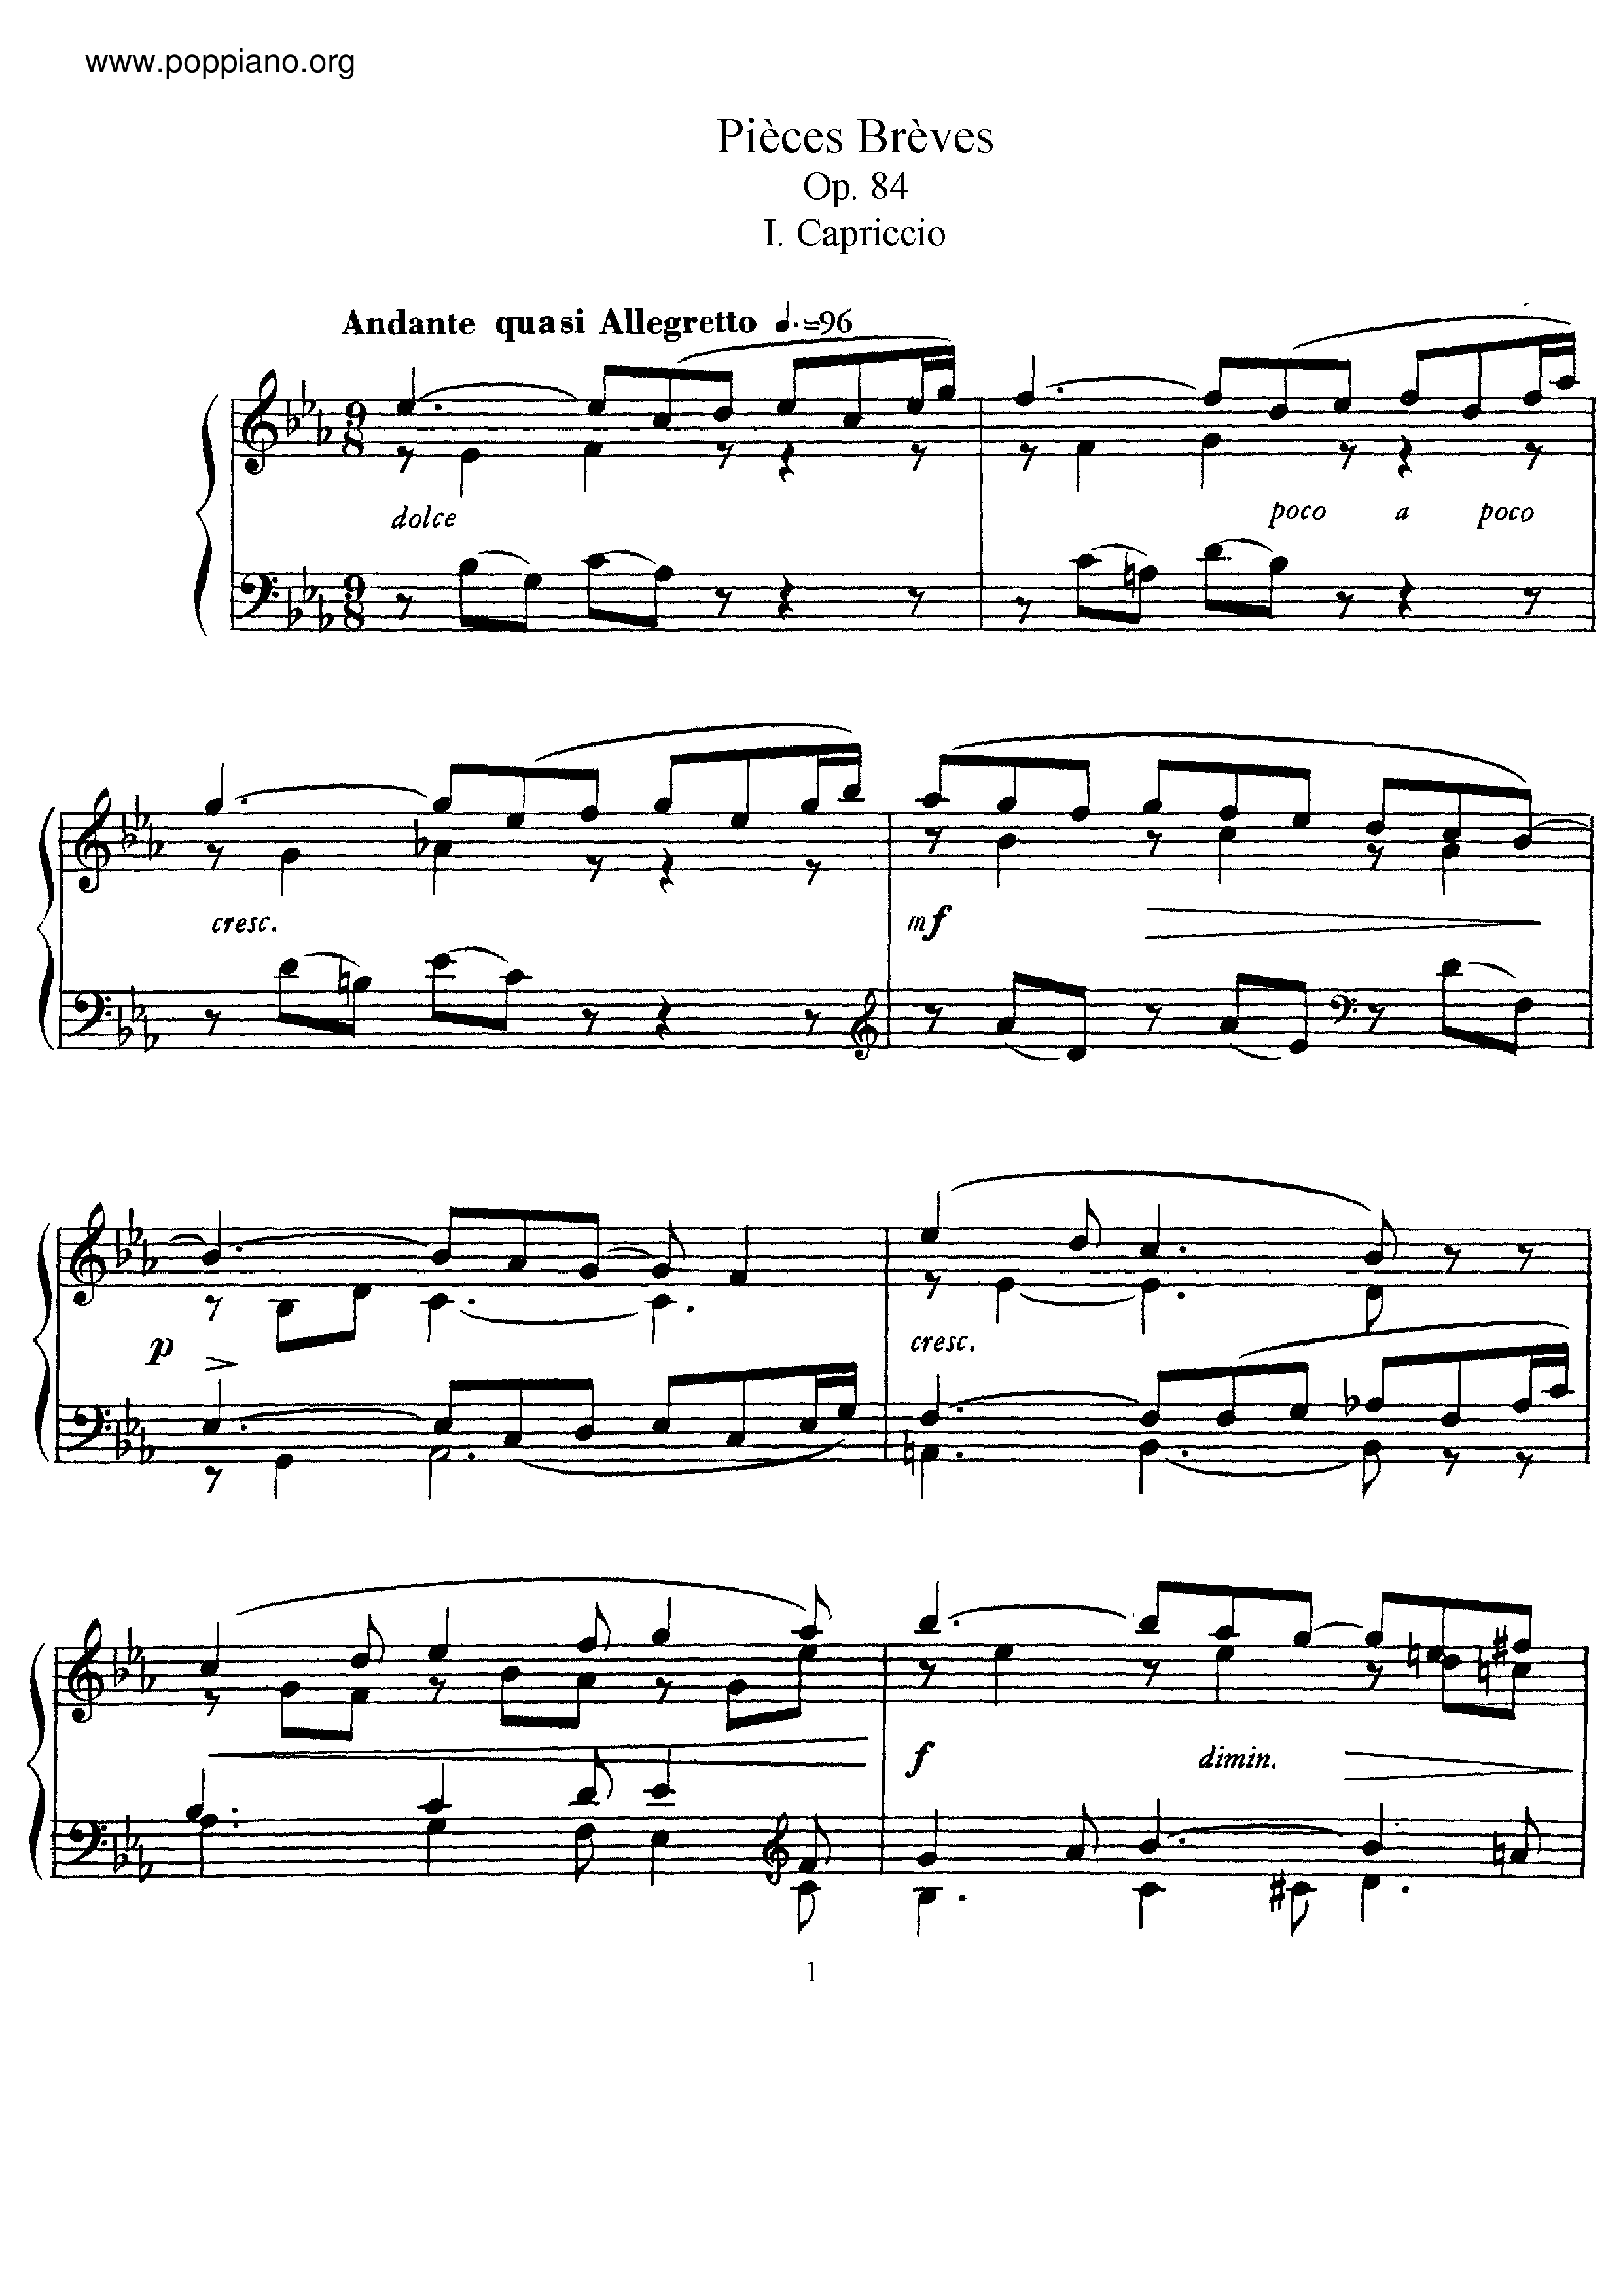 Pieces Breves, Op.84ピアノ譜